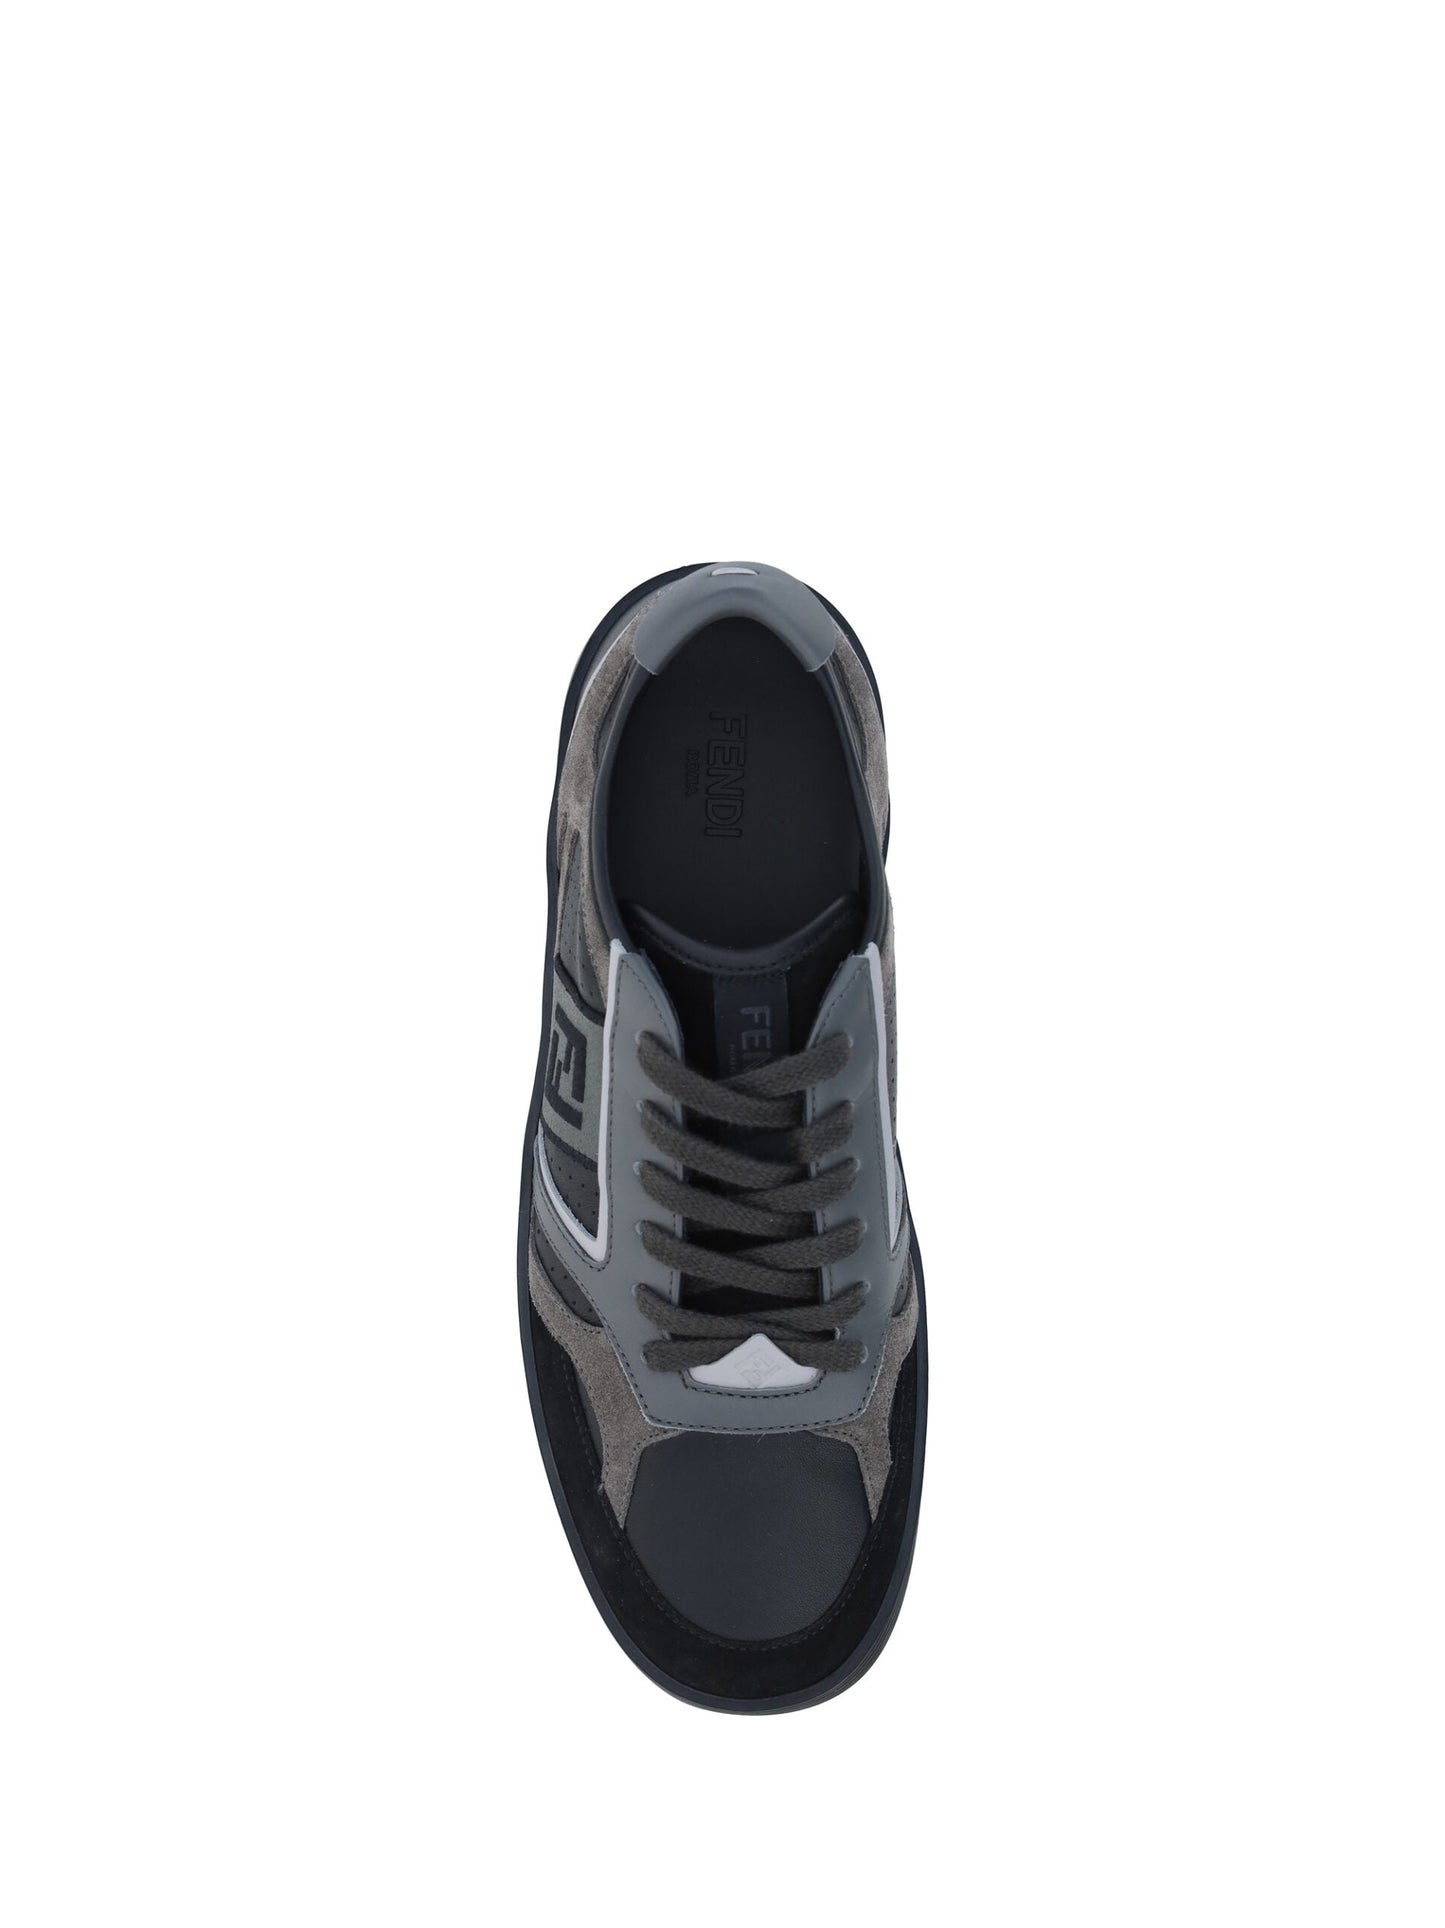 Fendi Black Leather Men Sneakers | Fashionsarah.com